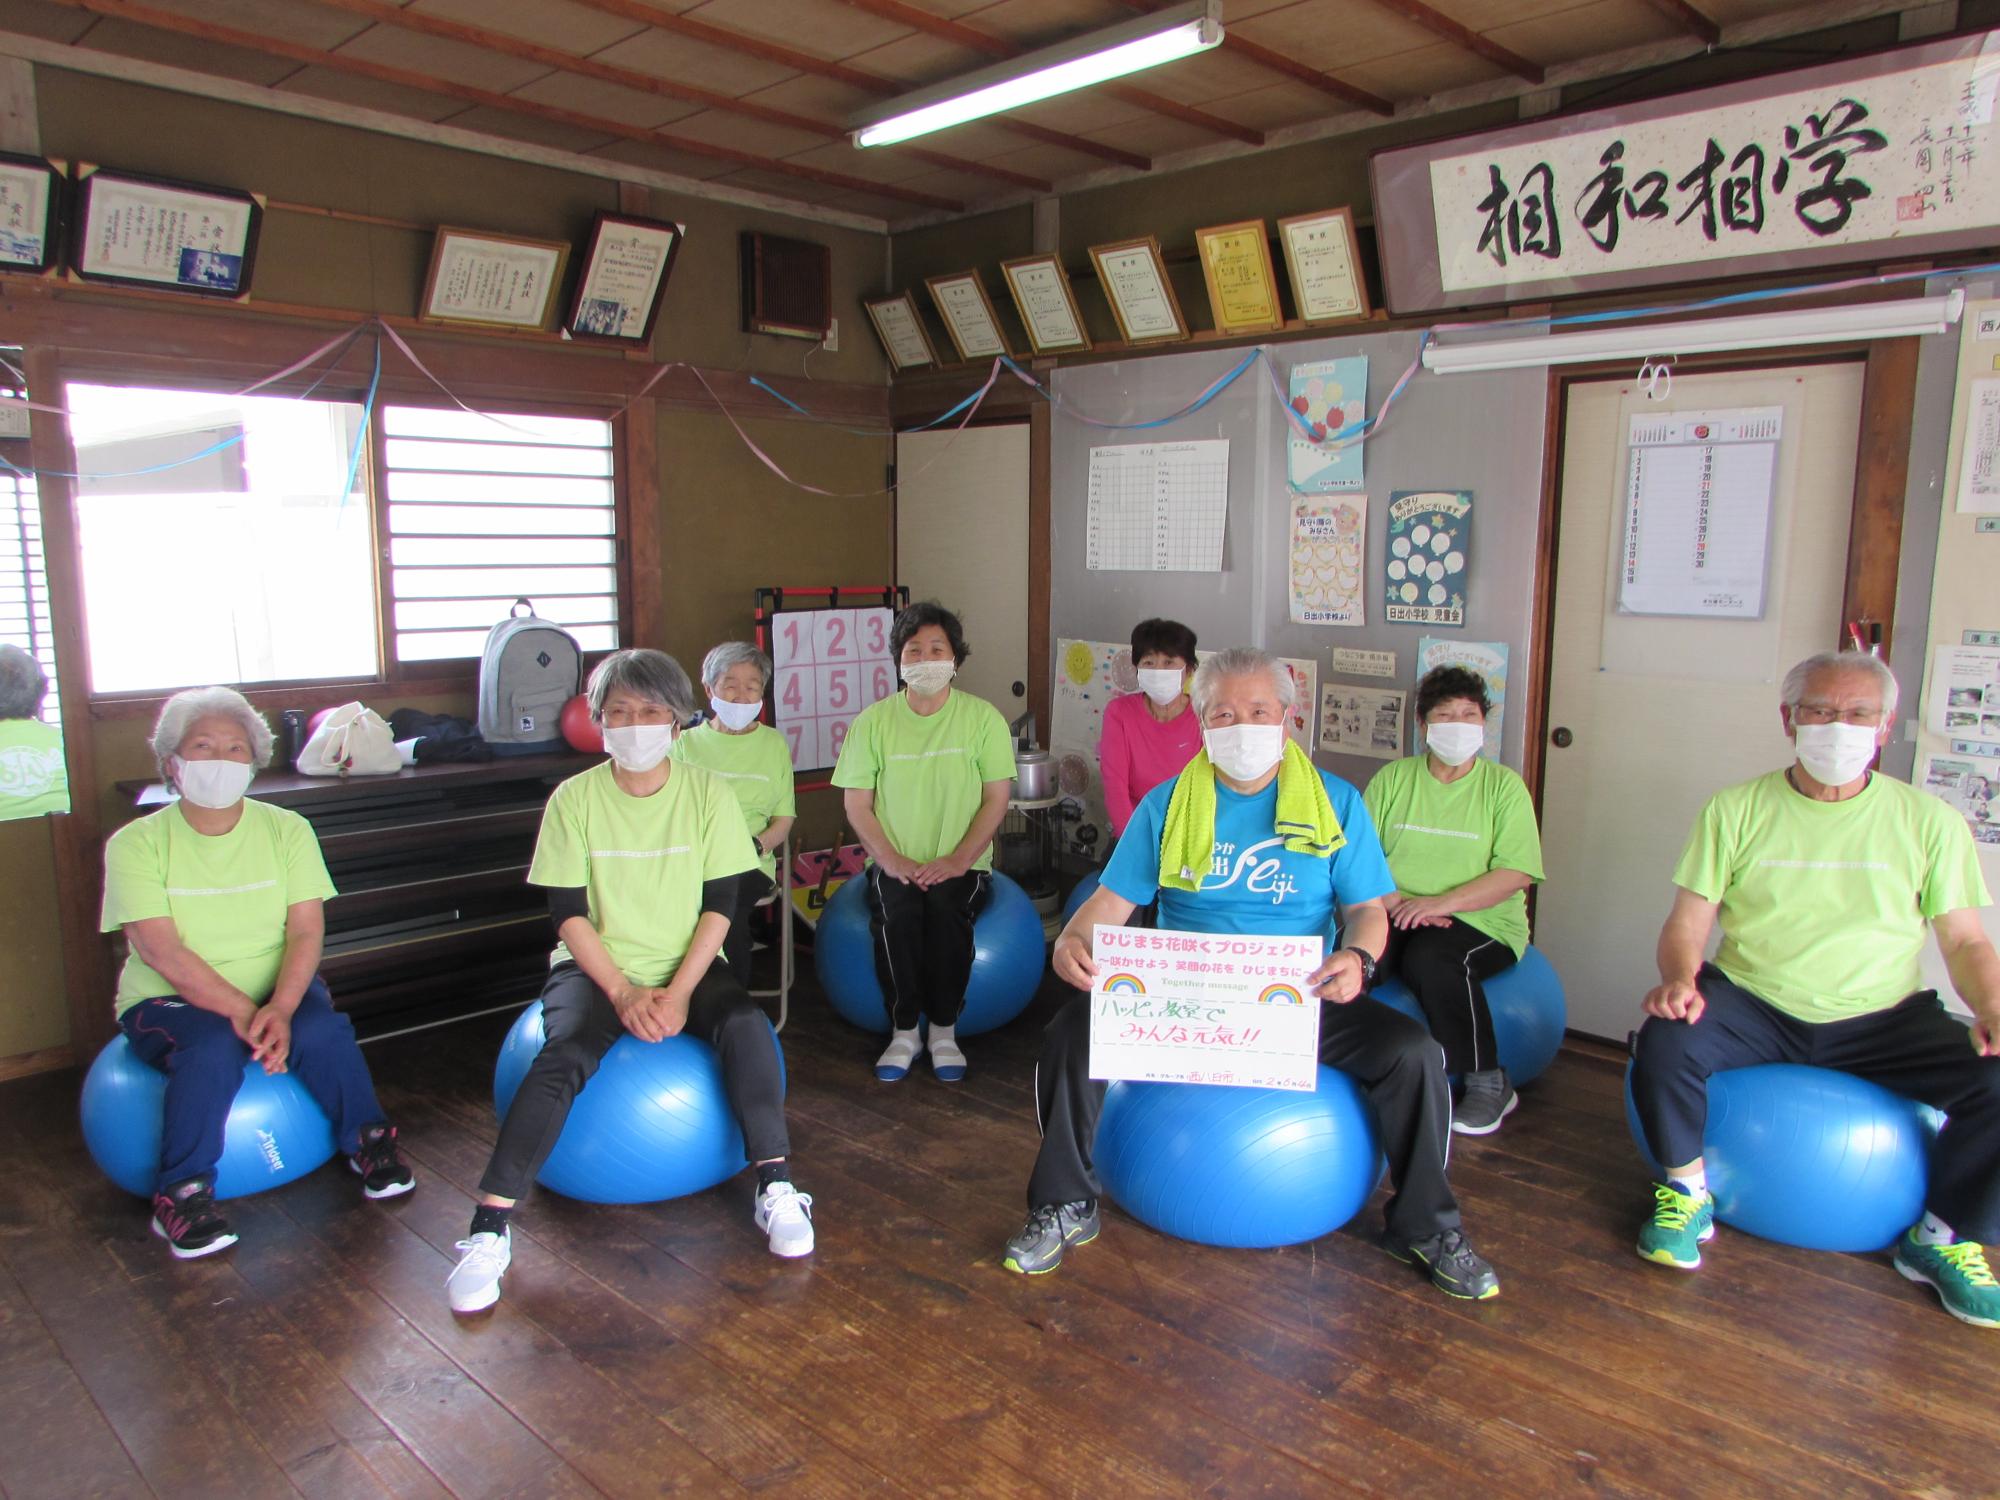 室内で2名が椅子に、6名が水色のバランスボールに座り、前右から2番目の男性が両手で応援メッセージの用紙を持っている集合写真